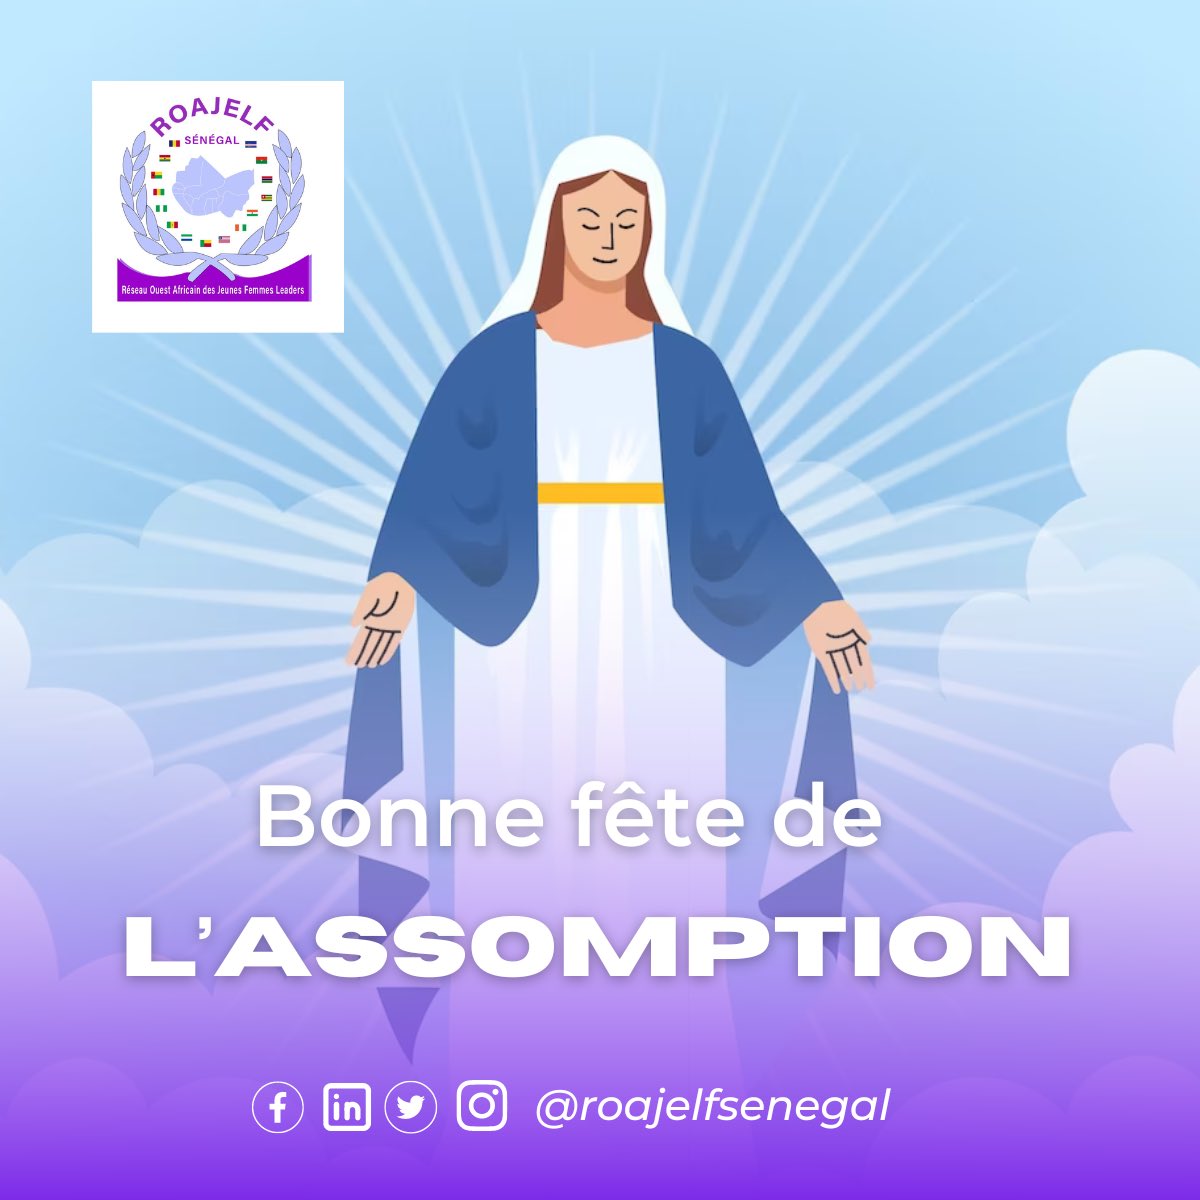 Le ROAJELF SÉNÉGAL souhaite une très belle fête de l'Assomption à toute la communauté chrétienne. 🕊️⛪️✝️ #assomption #bonnefete #christ #senegal #communautechretienne